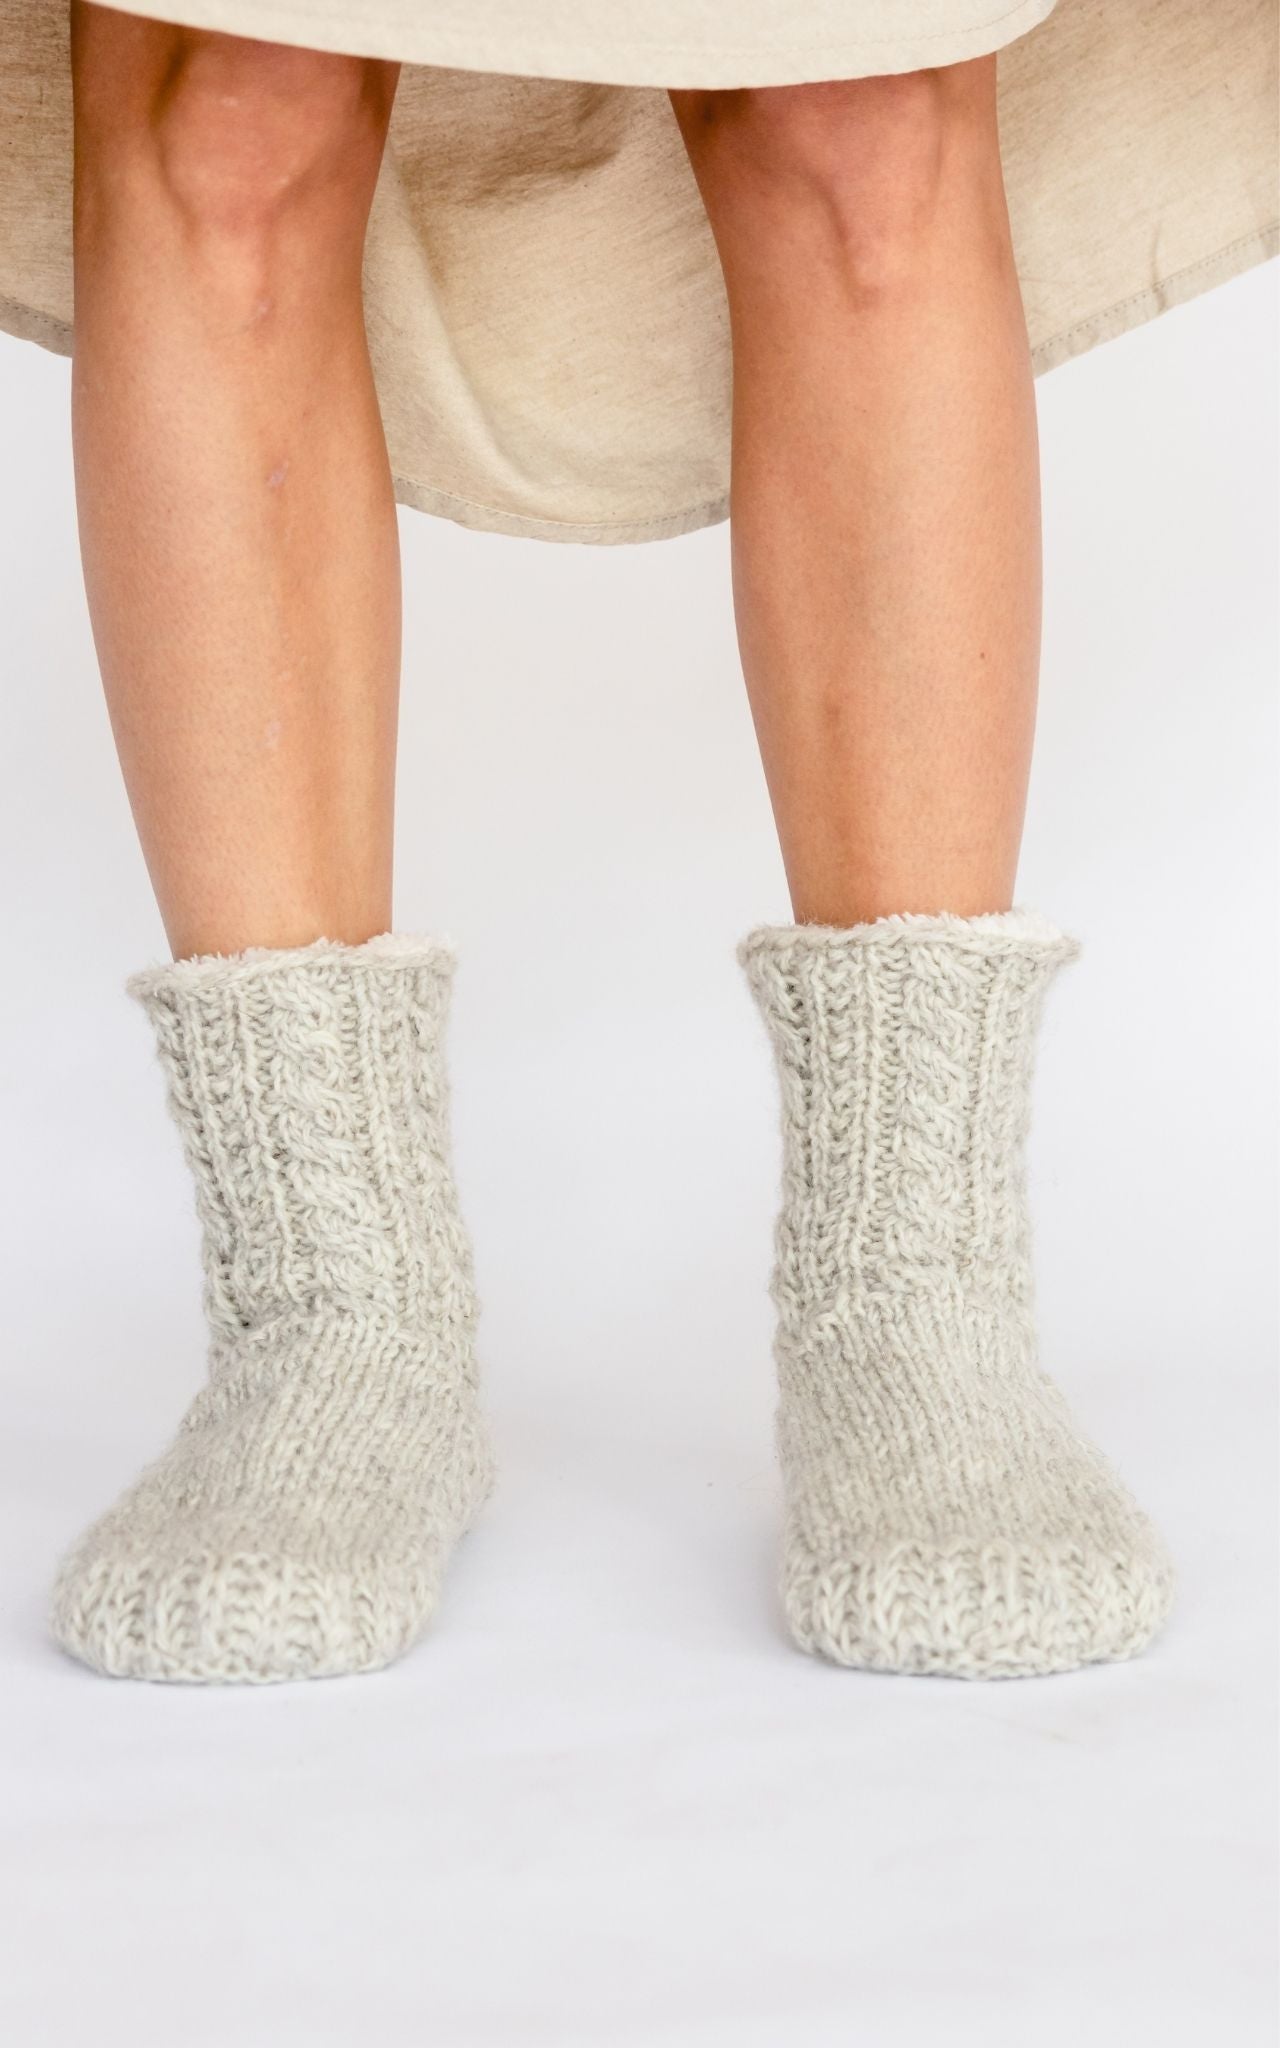 Surya Australia Ethical Wool Socks made in Nepal - Oatmeal